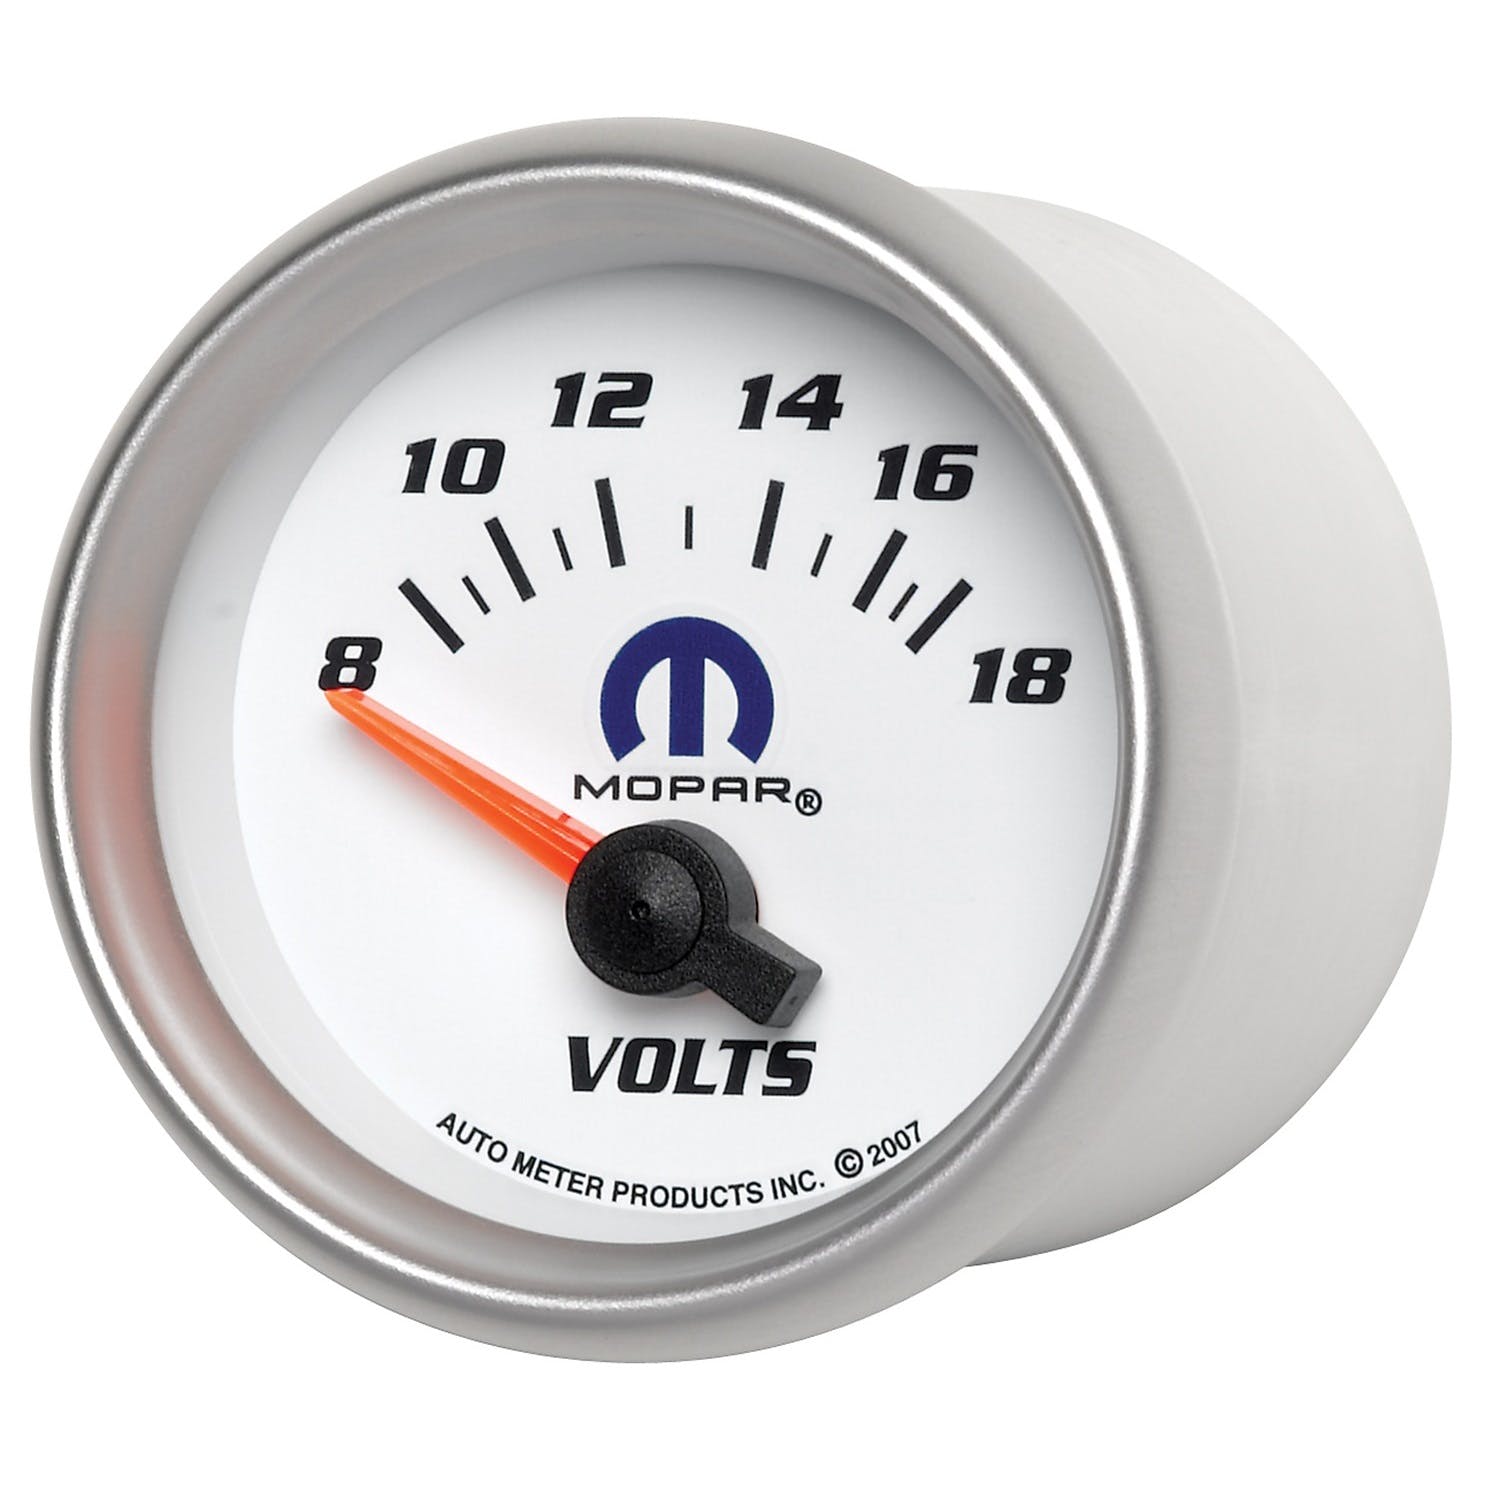 AutoMeter Products 880035 Mopar #77060050, 2-1/16 Voltmeter, 8-18V, SSE